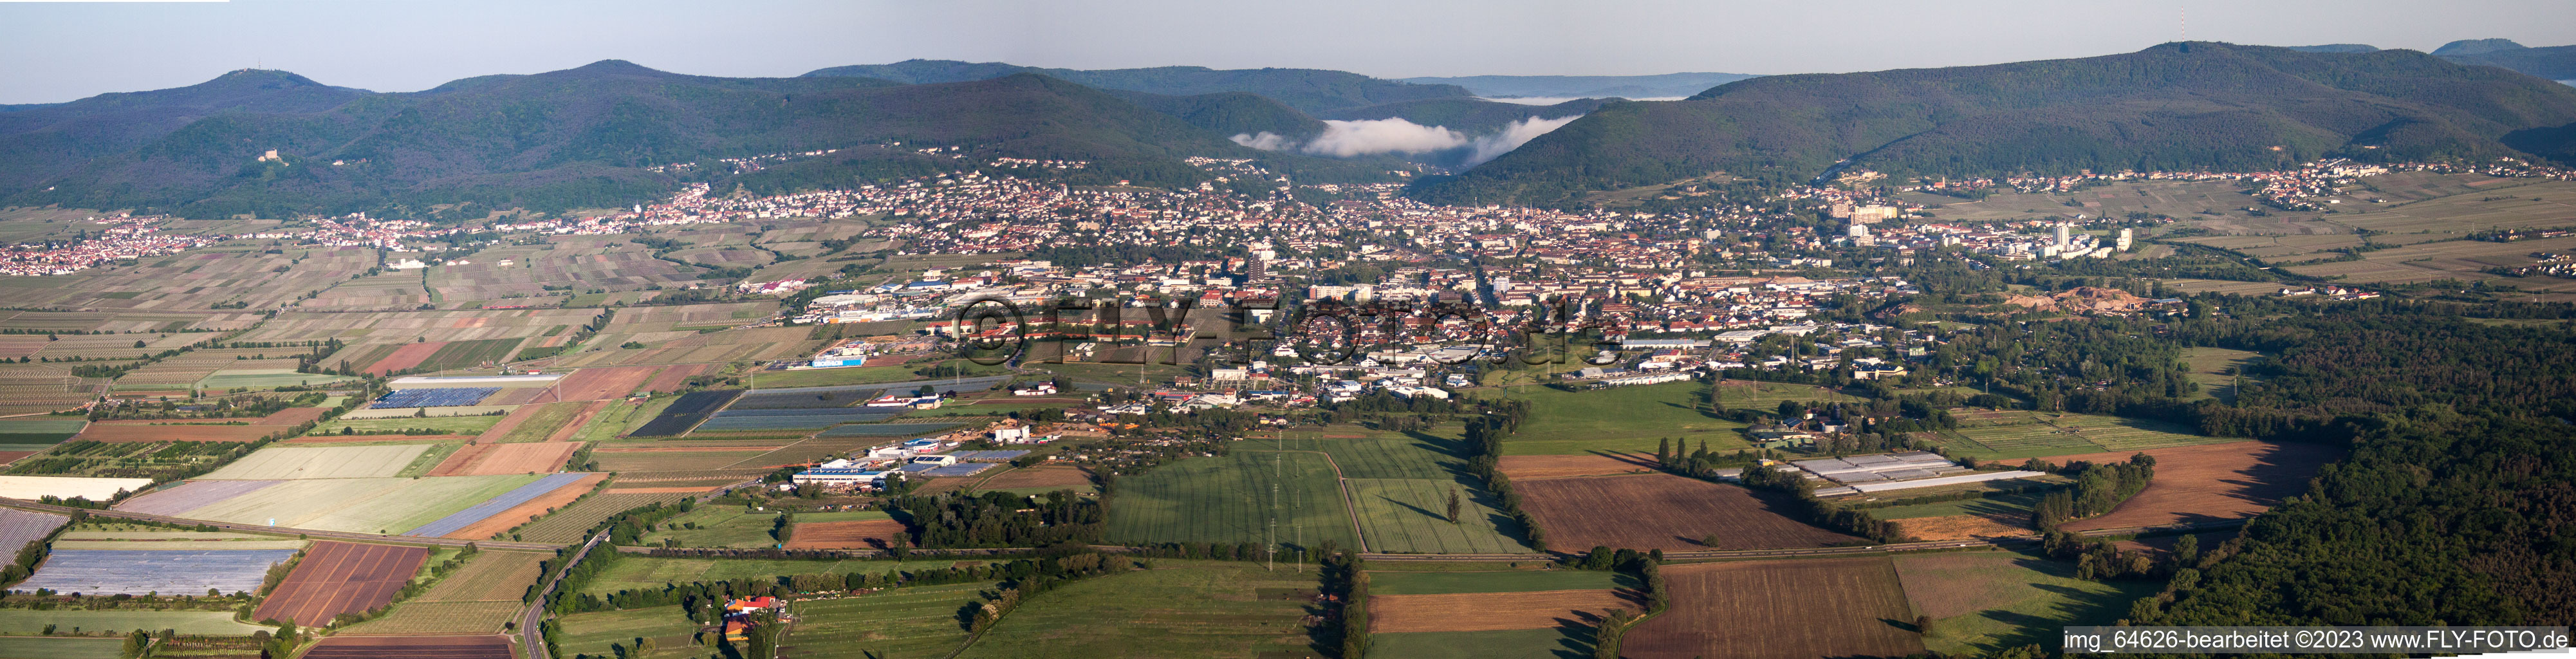 Luftbild von Panorama mit Morgennebel vom Ortsbereich und der Umgebung in Neustadt an der Weinstraße im Bundesland Rheinland-Pfalz, Deutschland